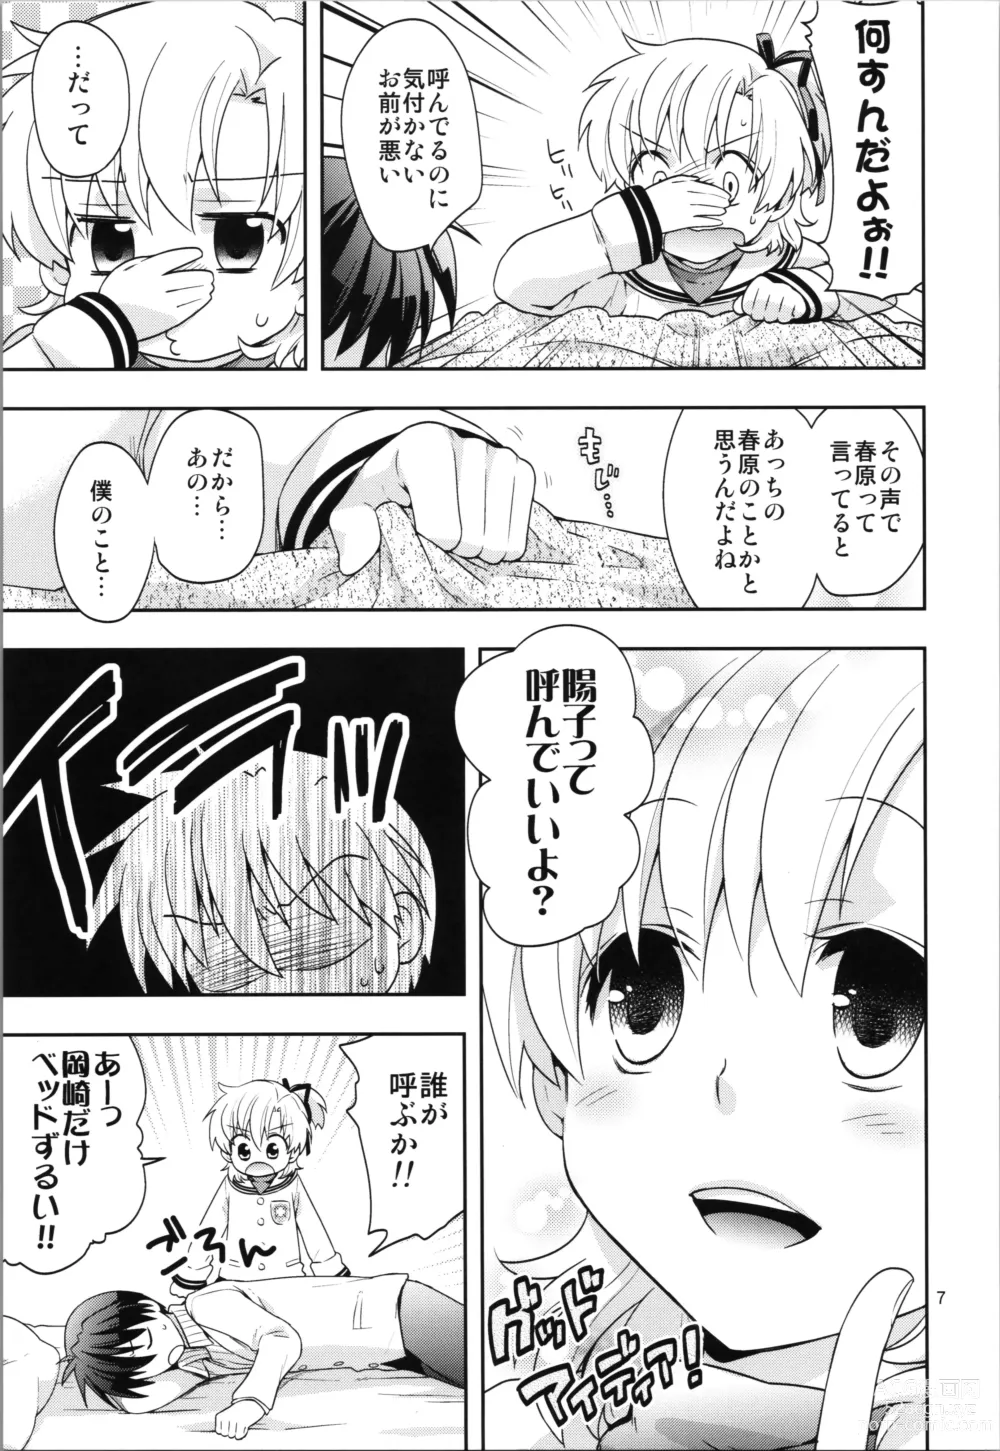 Page 7 of doujinshi Ura Haruhara Mania